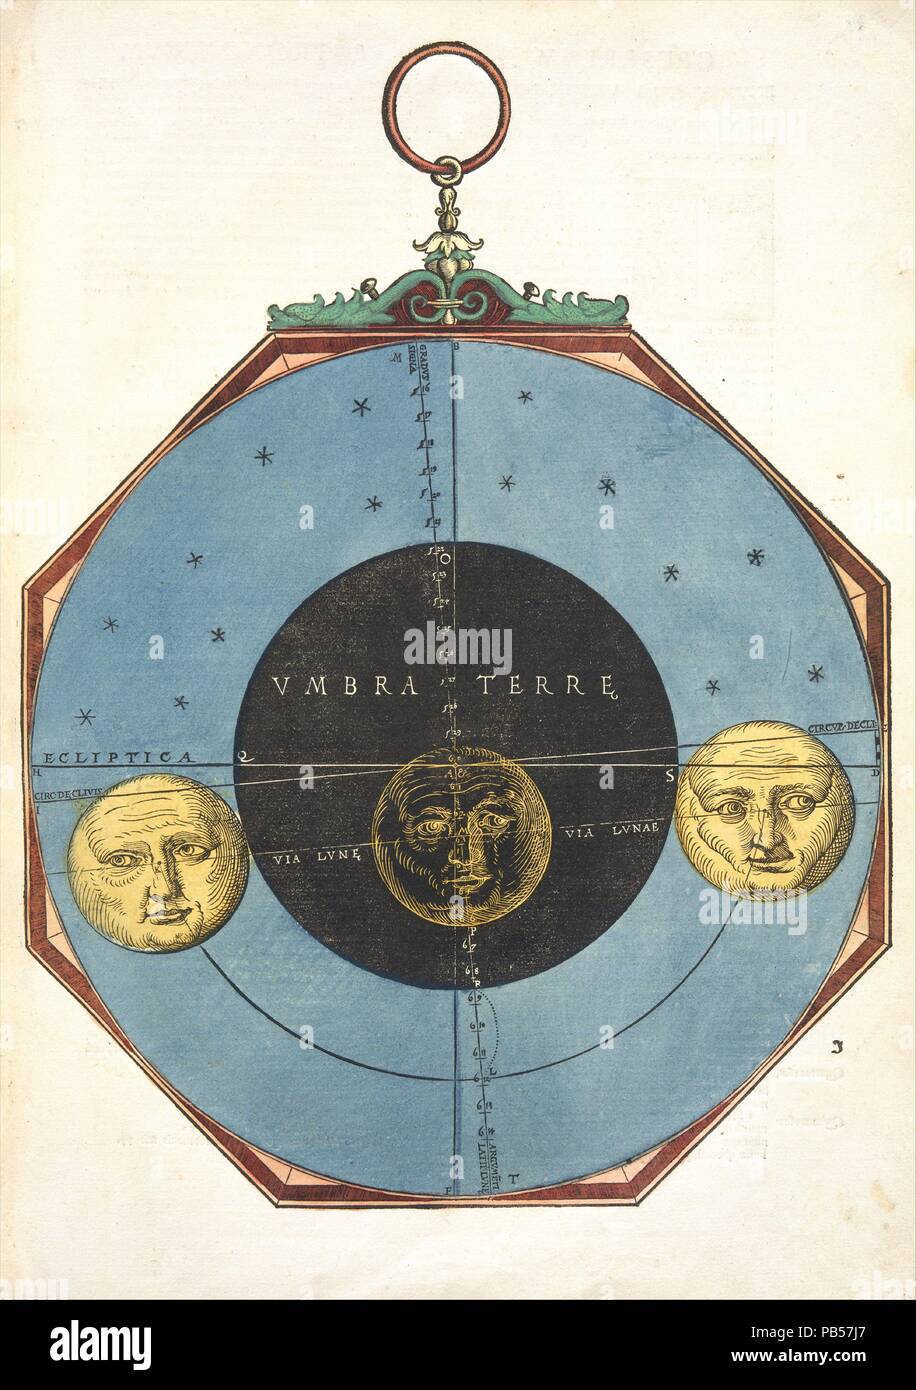 Astronomicum Caesareum. Artiste : Michael Ostendorfer (allemand, ( ?) ca. 1490-1549 Ratisbonne). Auteur : Petrus Apianus (allemand, actif 1526-40) , allemand, 1495-1552. Dimensions : 17 × 12 × 7/8 11/16 1 5/16 in. (45,4 × 32,3 × 3,3 cm). Imprimante : Georg et Petrus Apianus (allemand). Date : mai 1540. Cette plus somptueux de tous les manuels instructifs Renaissance a expliqué l'utilisation de l'astrolabe (pour le calcul de l'altitude d'étoiles) et d'autres instruments utilisés pour le calcul des positions planétaires. L'auteur, astronome de la cour à l'Empereur Charles V, a aussi fourni de nouvelles observations sur la comète de Halley (1531 Co Banque D'Images